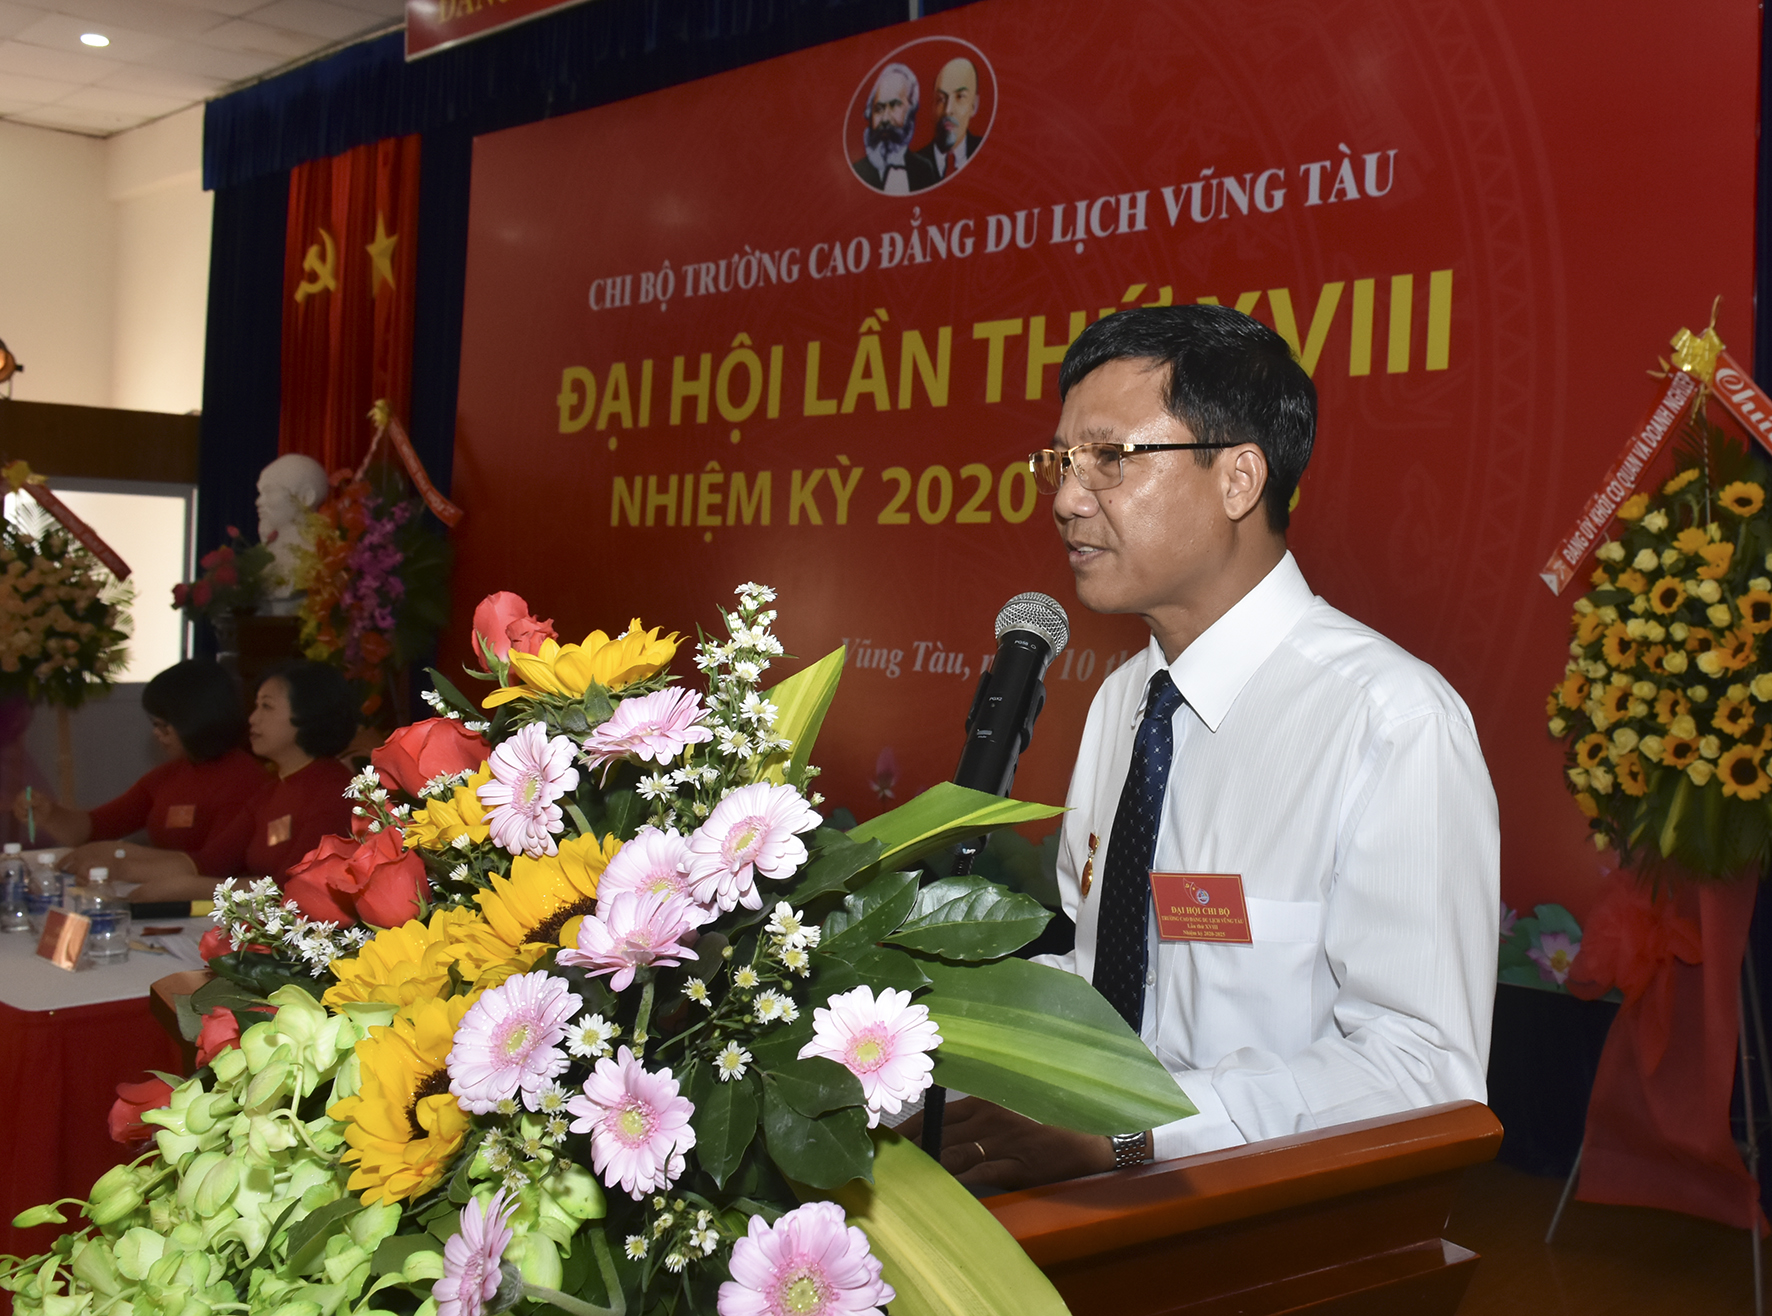 Đồng chí Đoàn Kim Hải, Phó BÍ thư Chi bộ, Phó Hiệu trưởng Trường CĐ Du lịch Vũng Tàu trình bày Báo cáo Chính trị tại Đại hội.